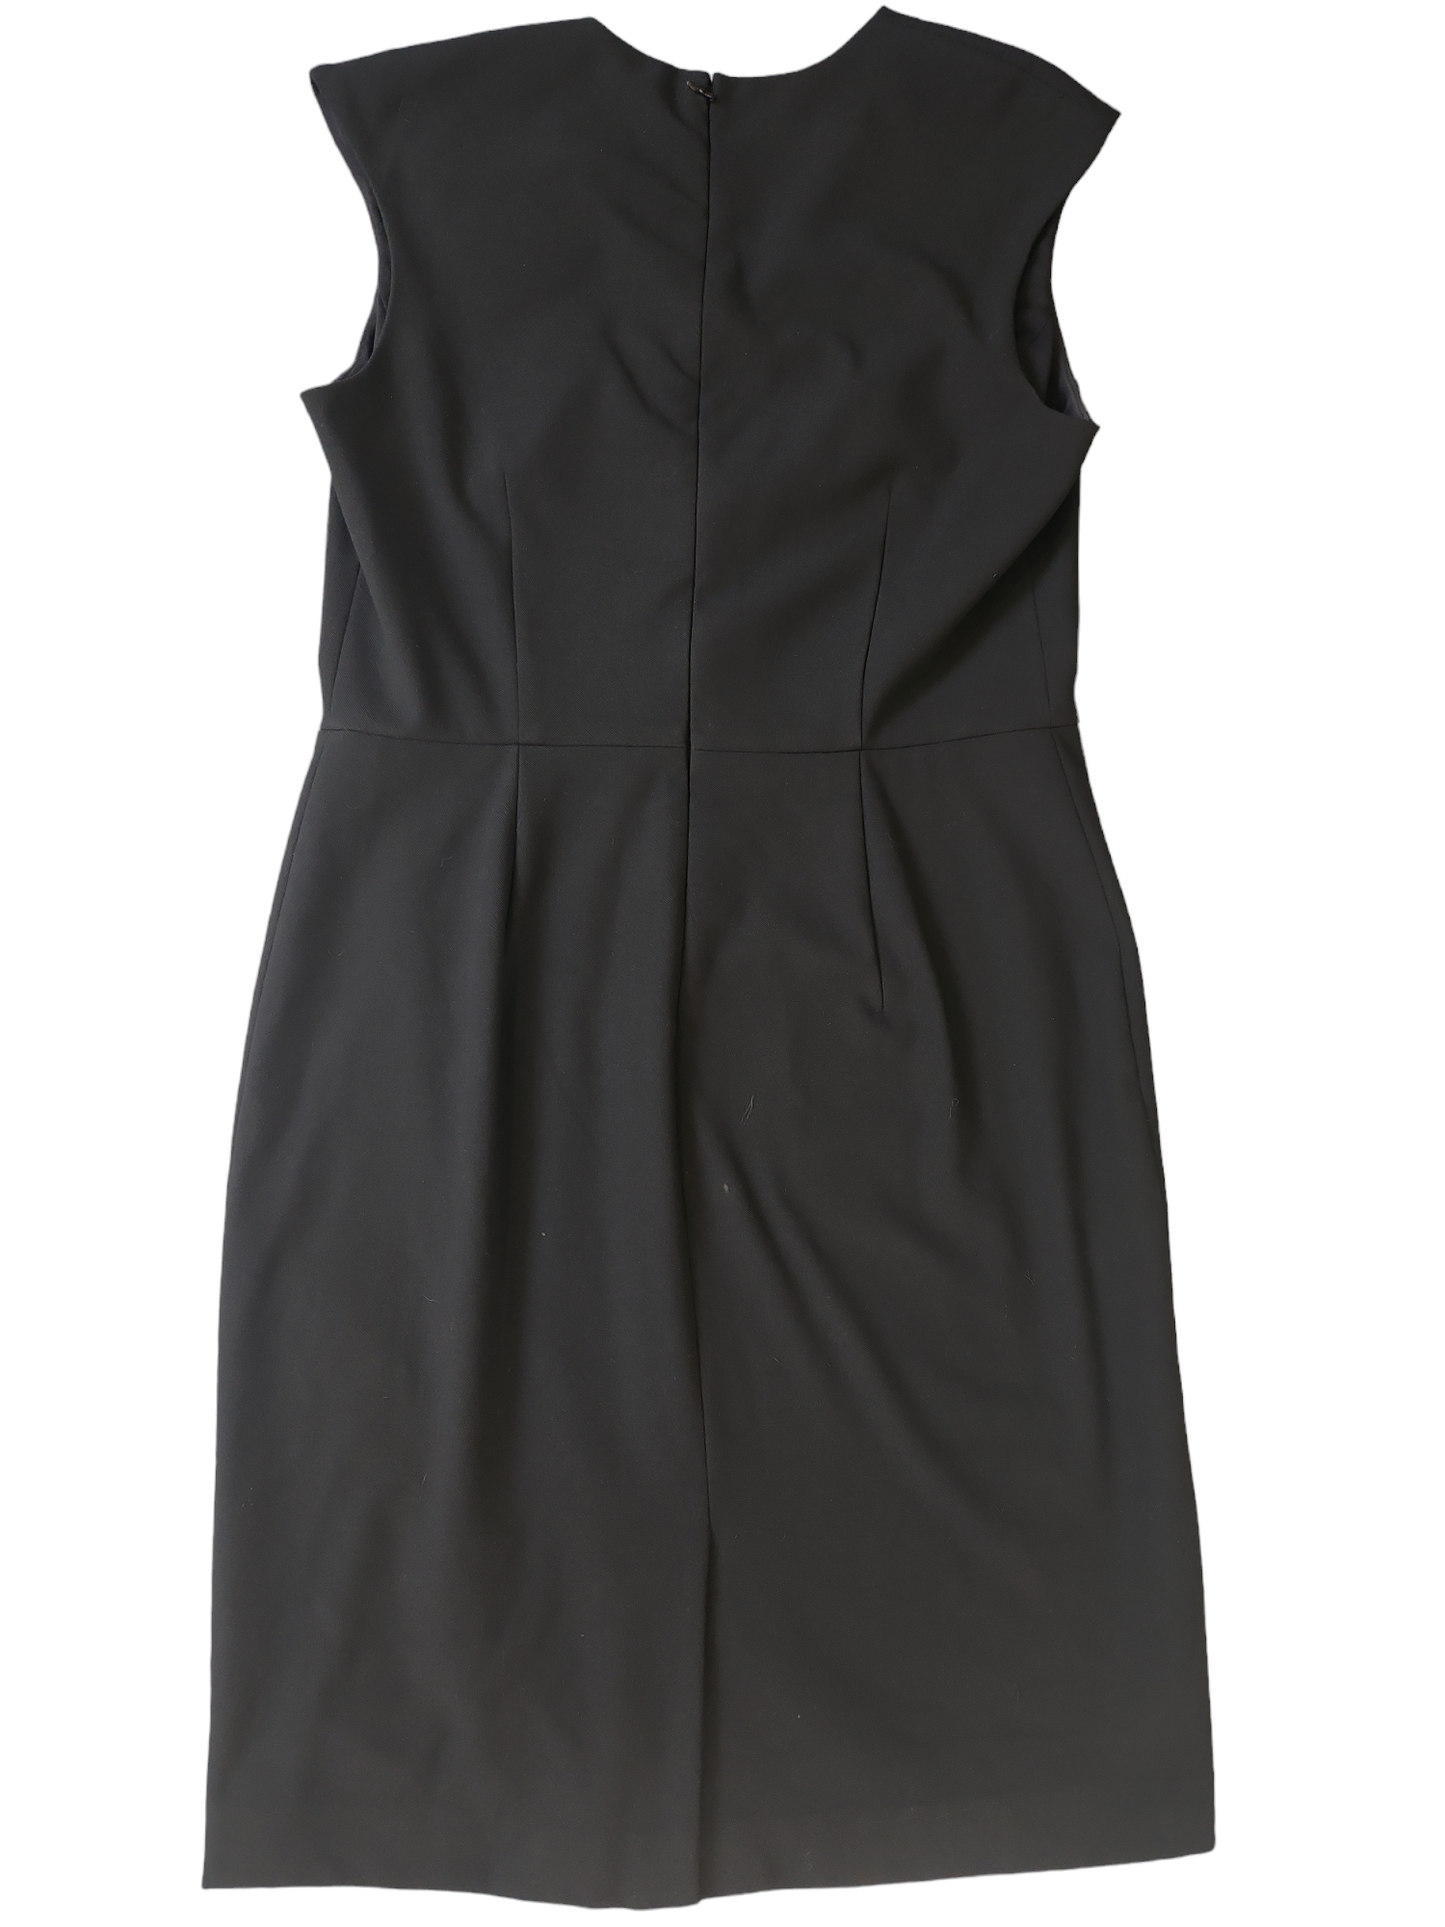 Ann Taylor Petite Black Formal Dress Size 8P